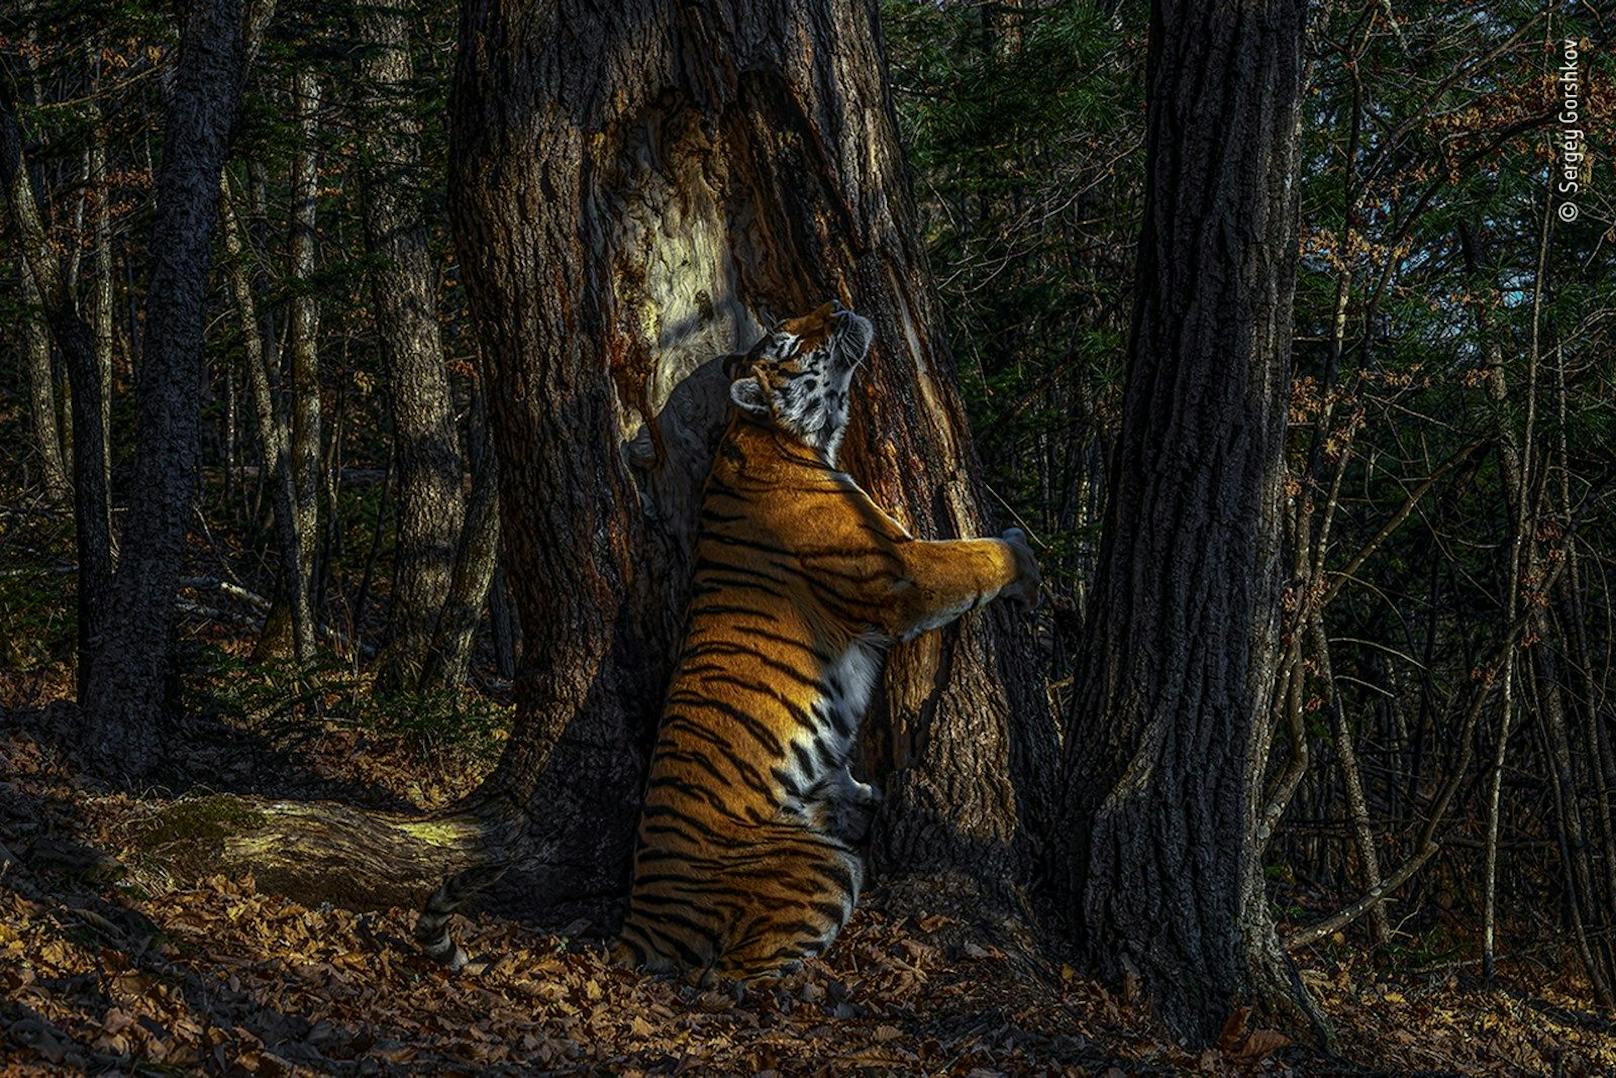 Der Russe Sergey Gorshkov ist DER "Wildlife Photographer of the Year 2020". Sein Siegerfoto <strong>"Die Umarmung"</strong> zeigt&nbsp;einen Amur-Tiger, der in einem kargen Wald in Sibirien einen Baum umarmt. Die Tigerart gilt als vom Aussterben bedroht und kommt nur in Sibirien vor. Der Fotograf hatte dem Museum zufolge elf Monate gewartet, um dieses Foto zu schießen. Das Ungewöhnliche daran ist, dass es von einer aufgestellten Kamerafalle stammt.<br>